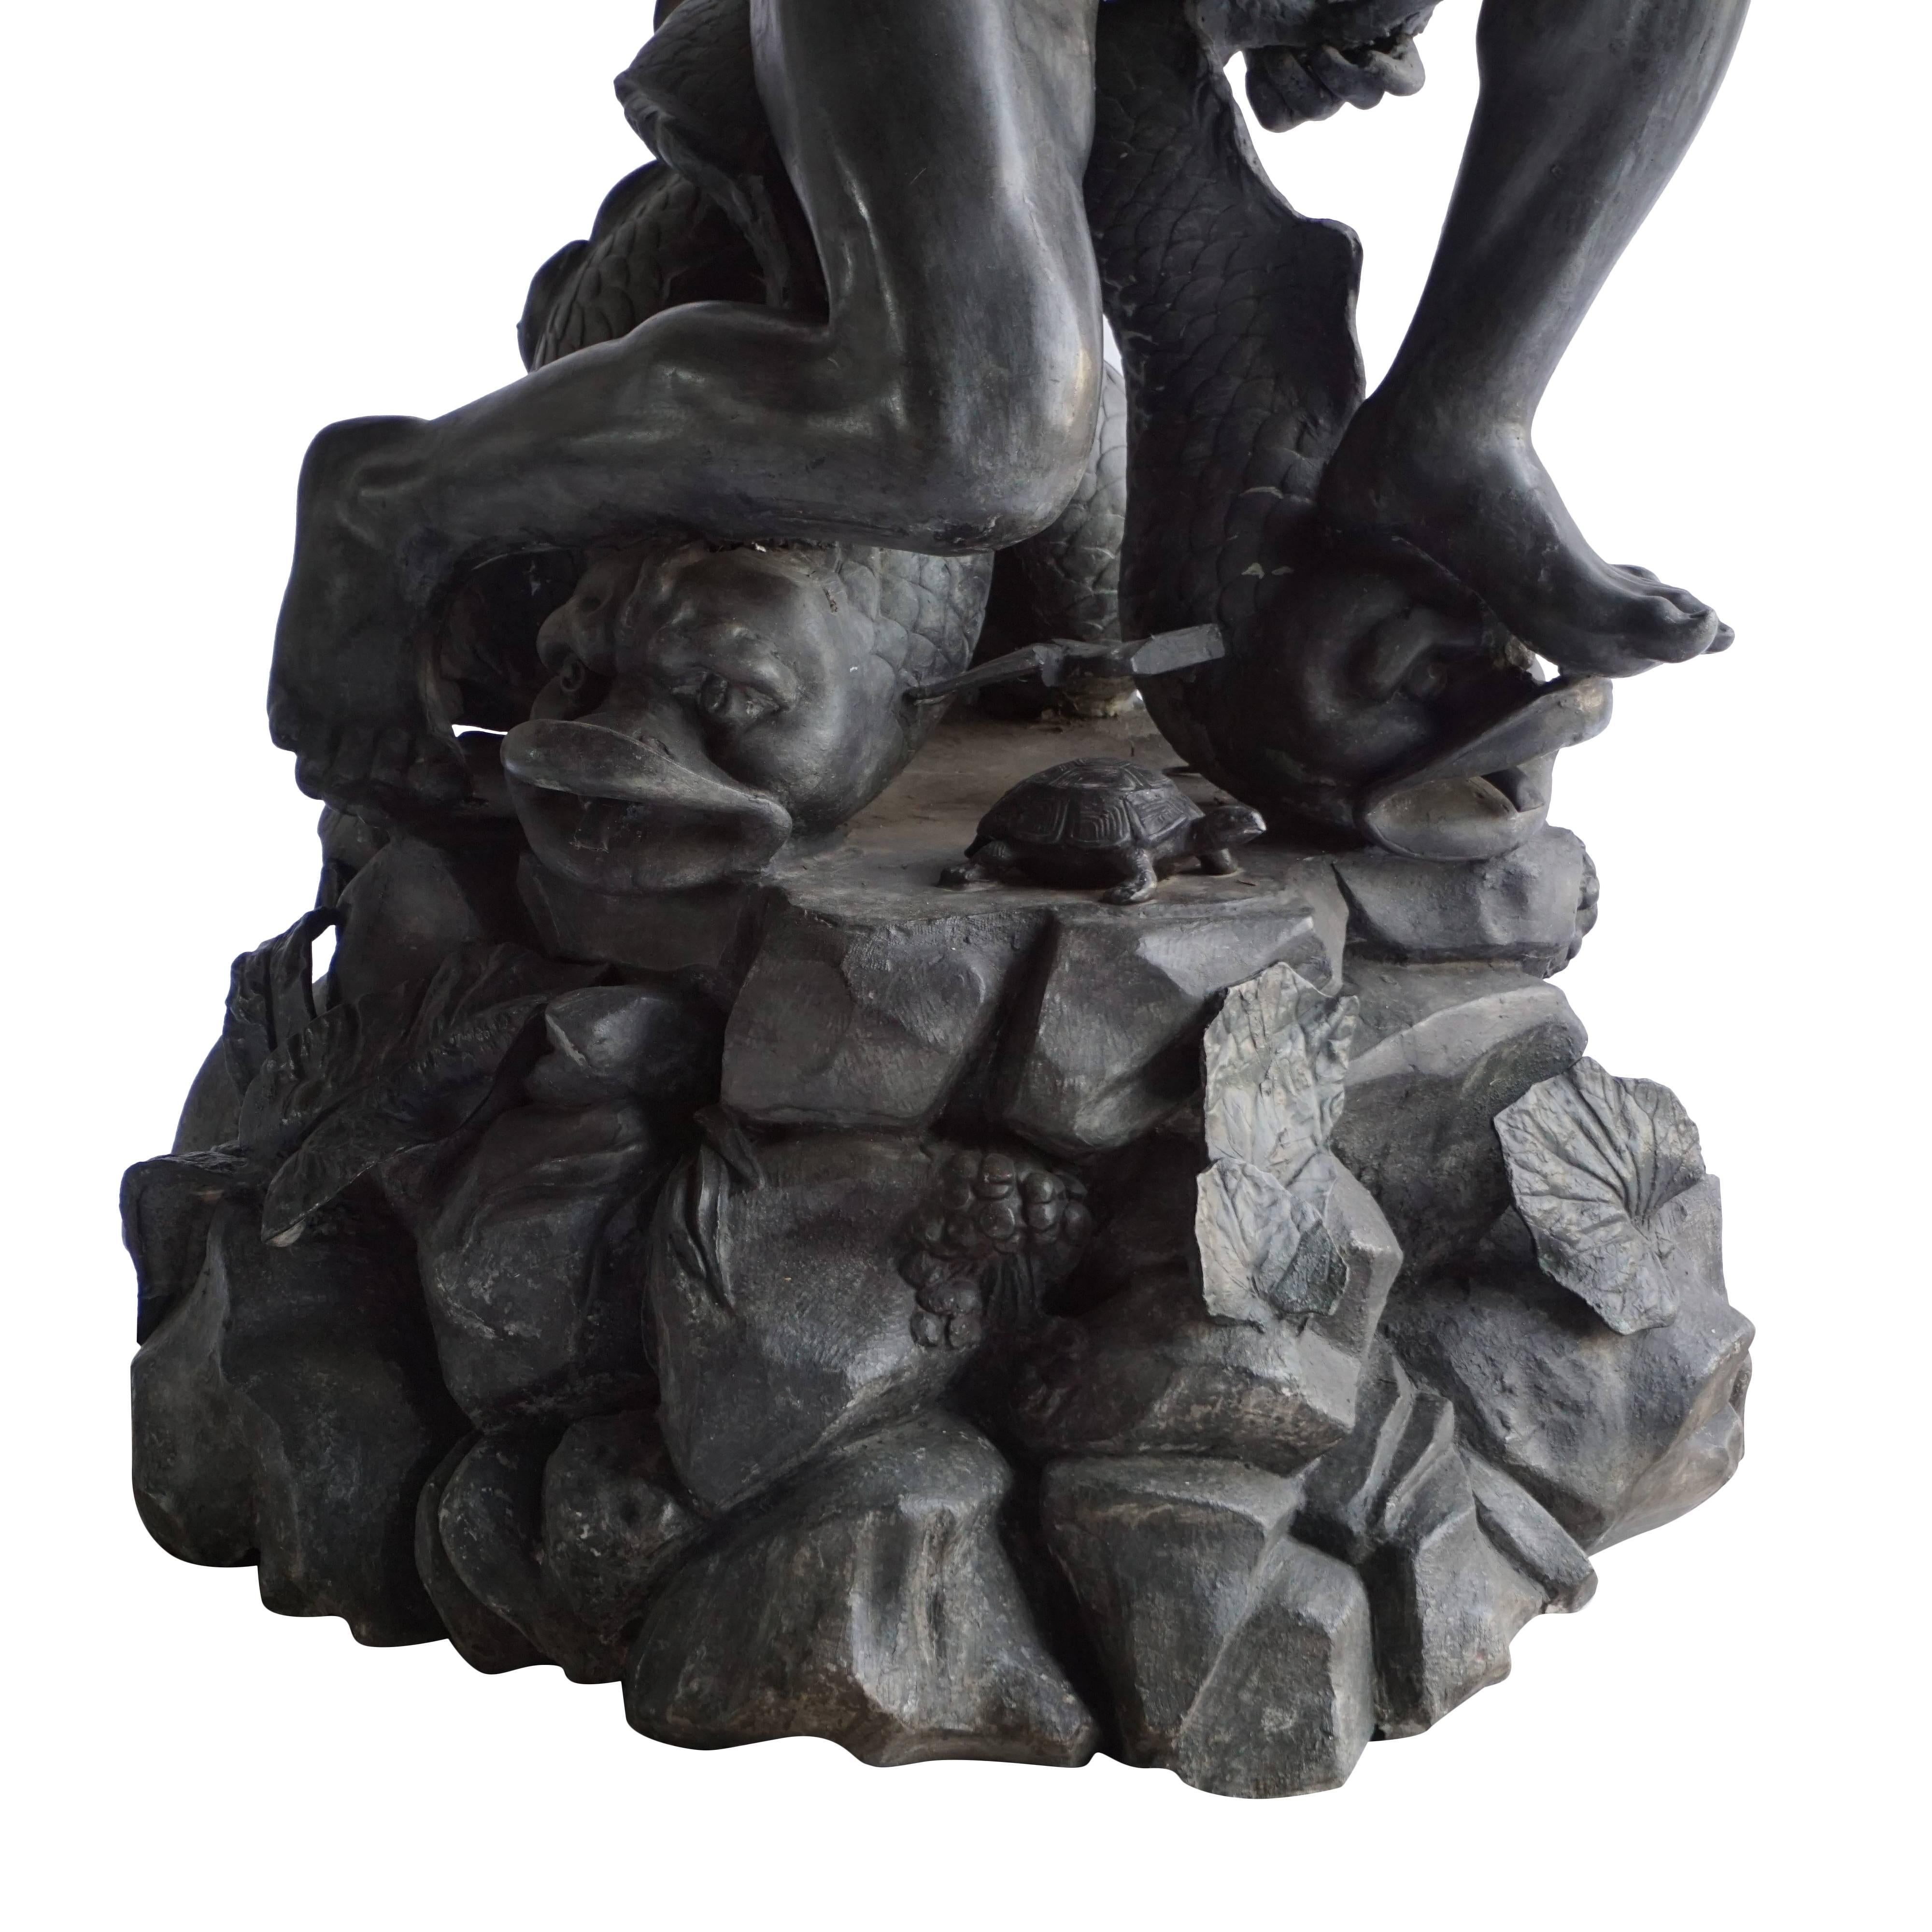 triton statue